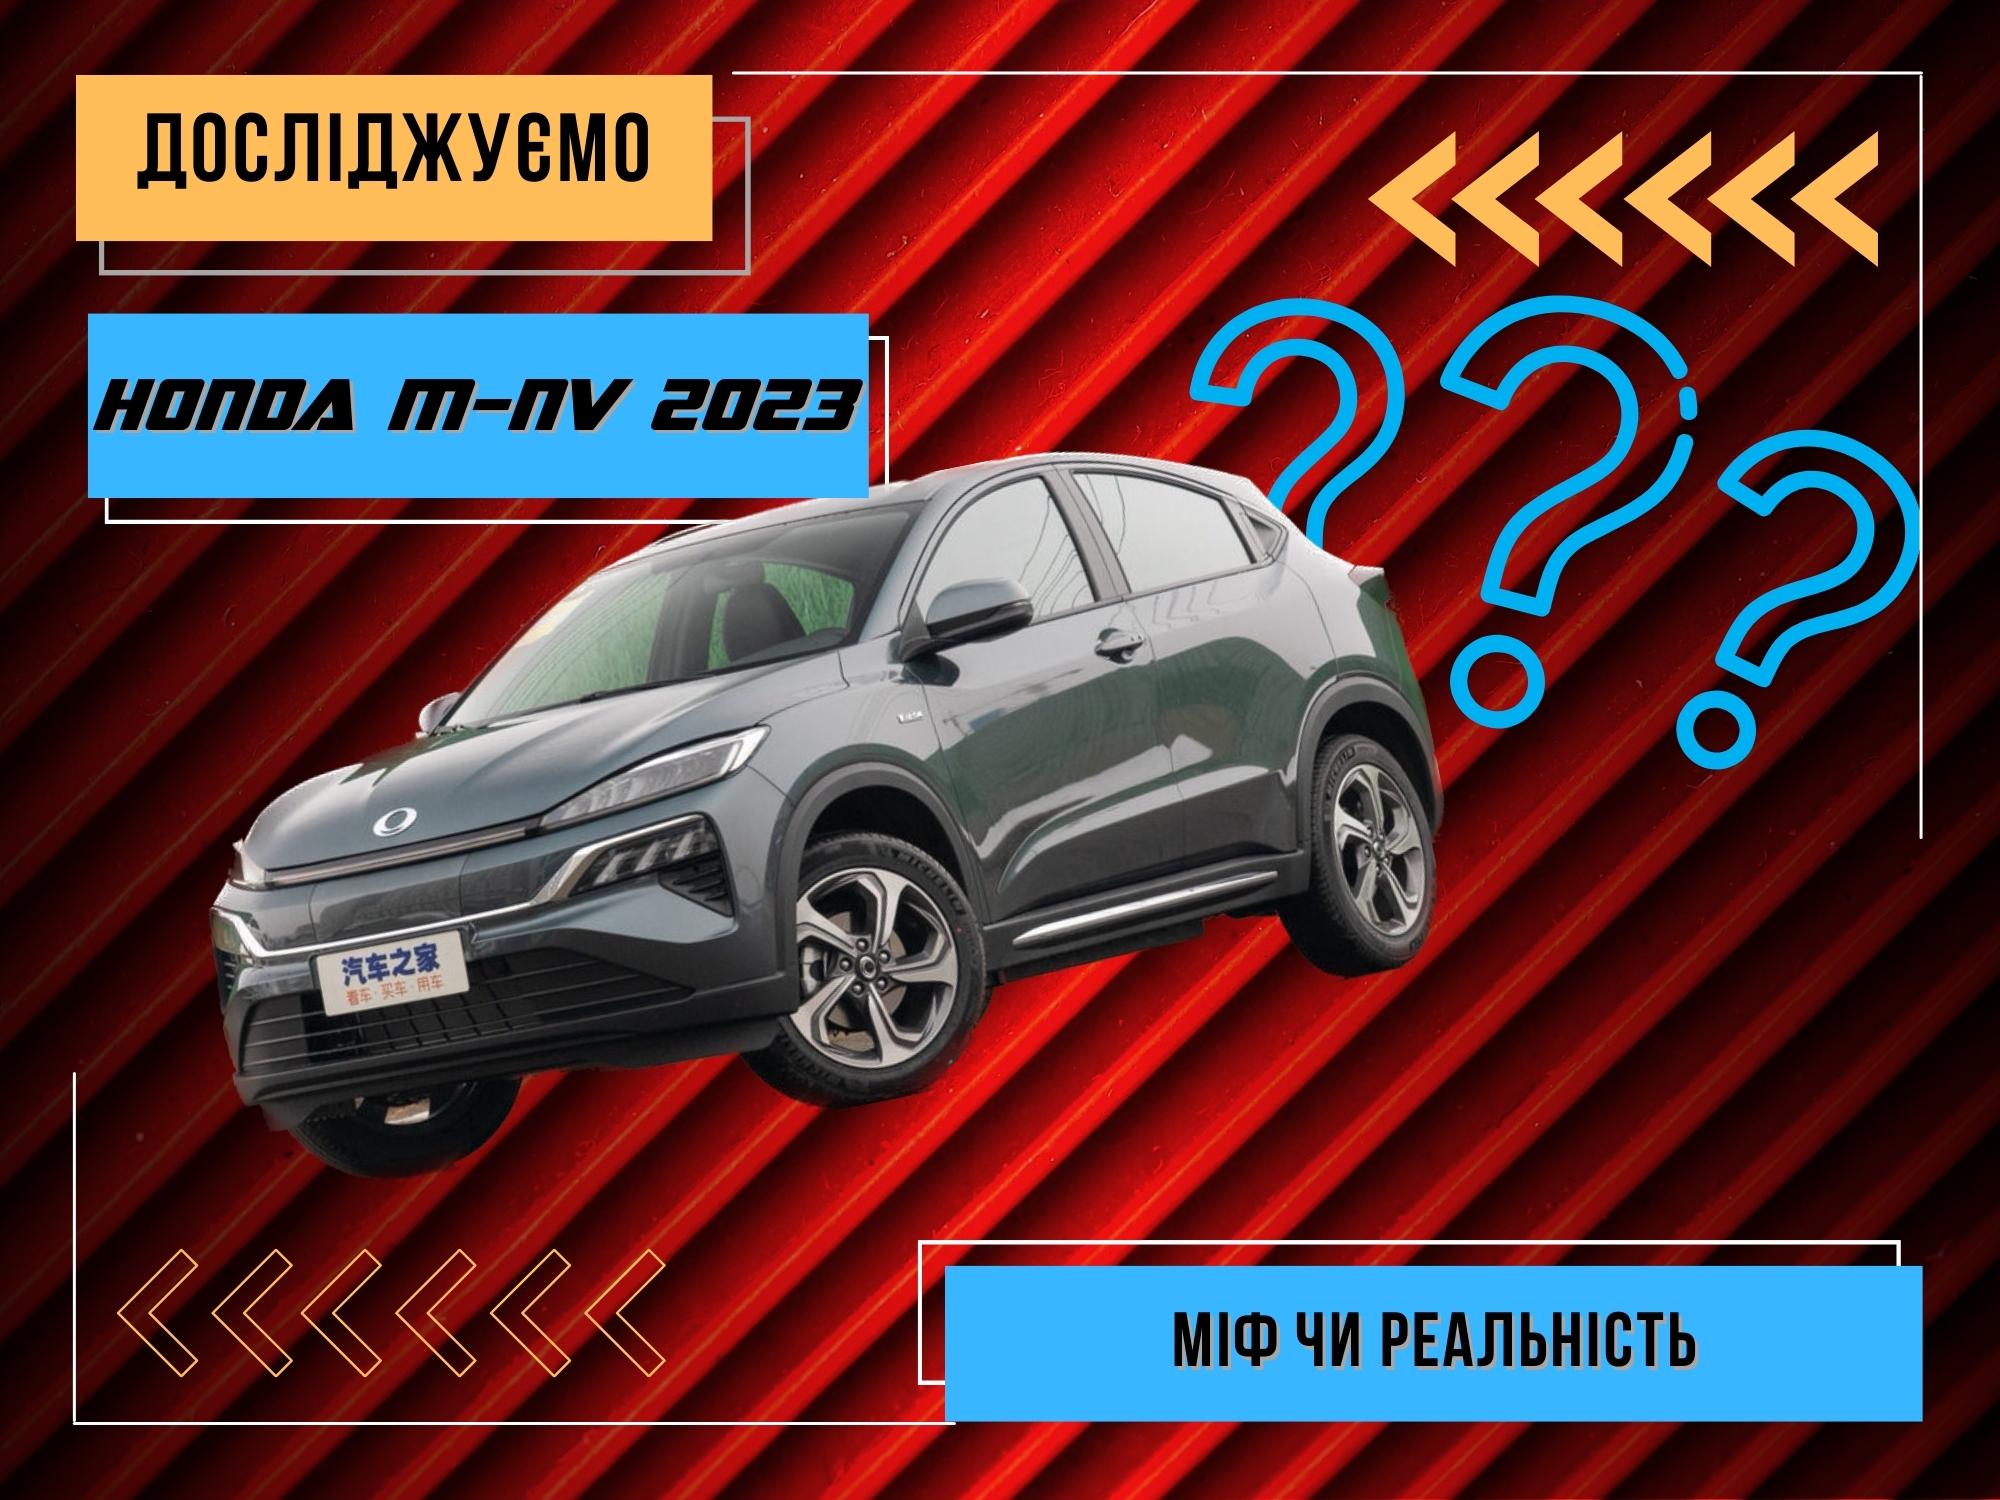 Honda M-NV 2023 року - міф чи реальність?!